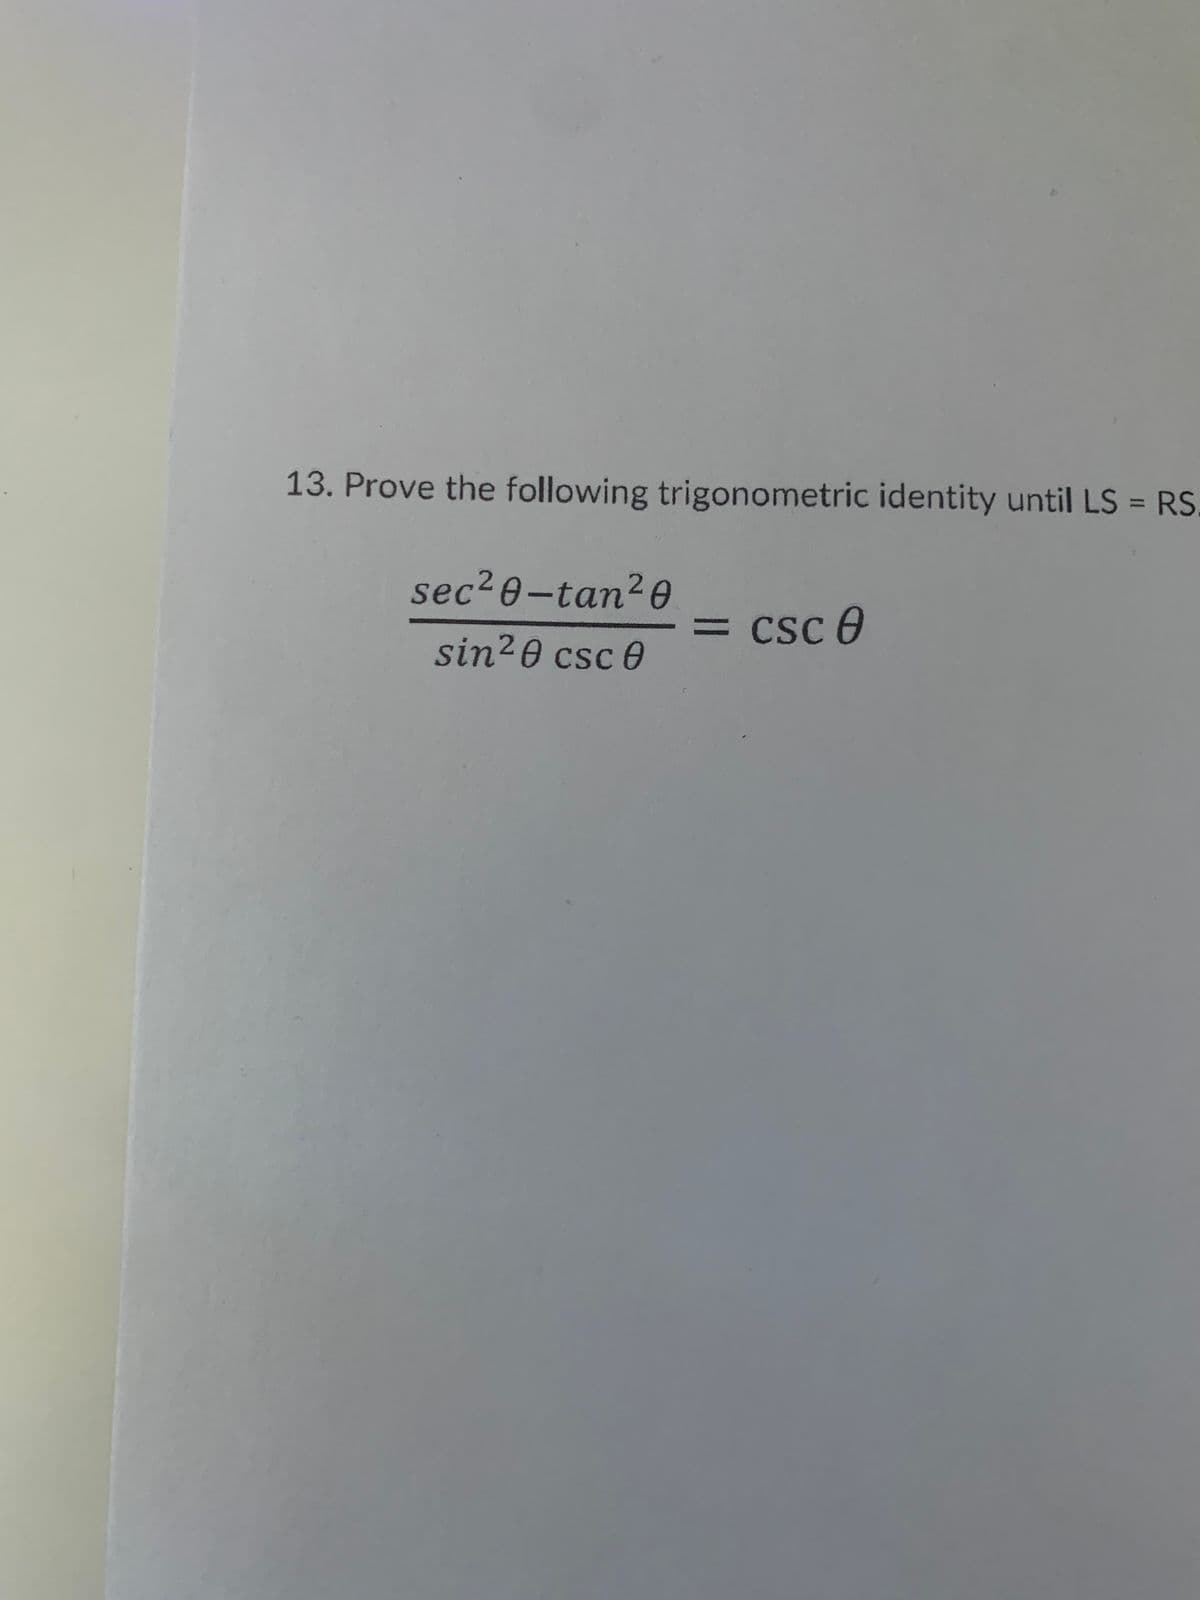 13. Prove the following trigonometric identity until LS = RS
%3D
sec2e-tan?0
= csc 0
%3D
sin20 csc 0
